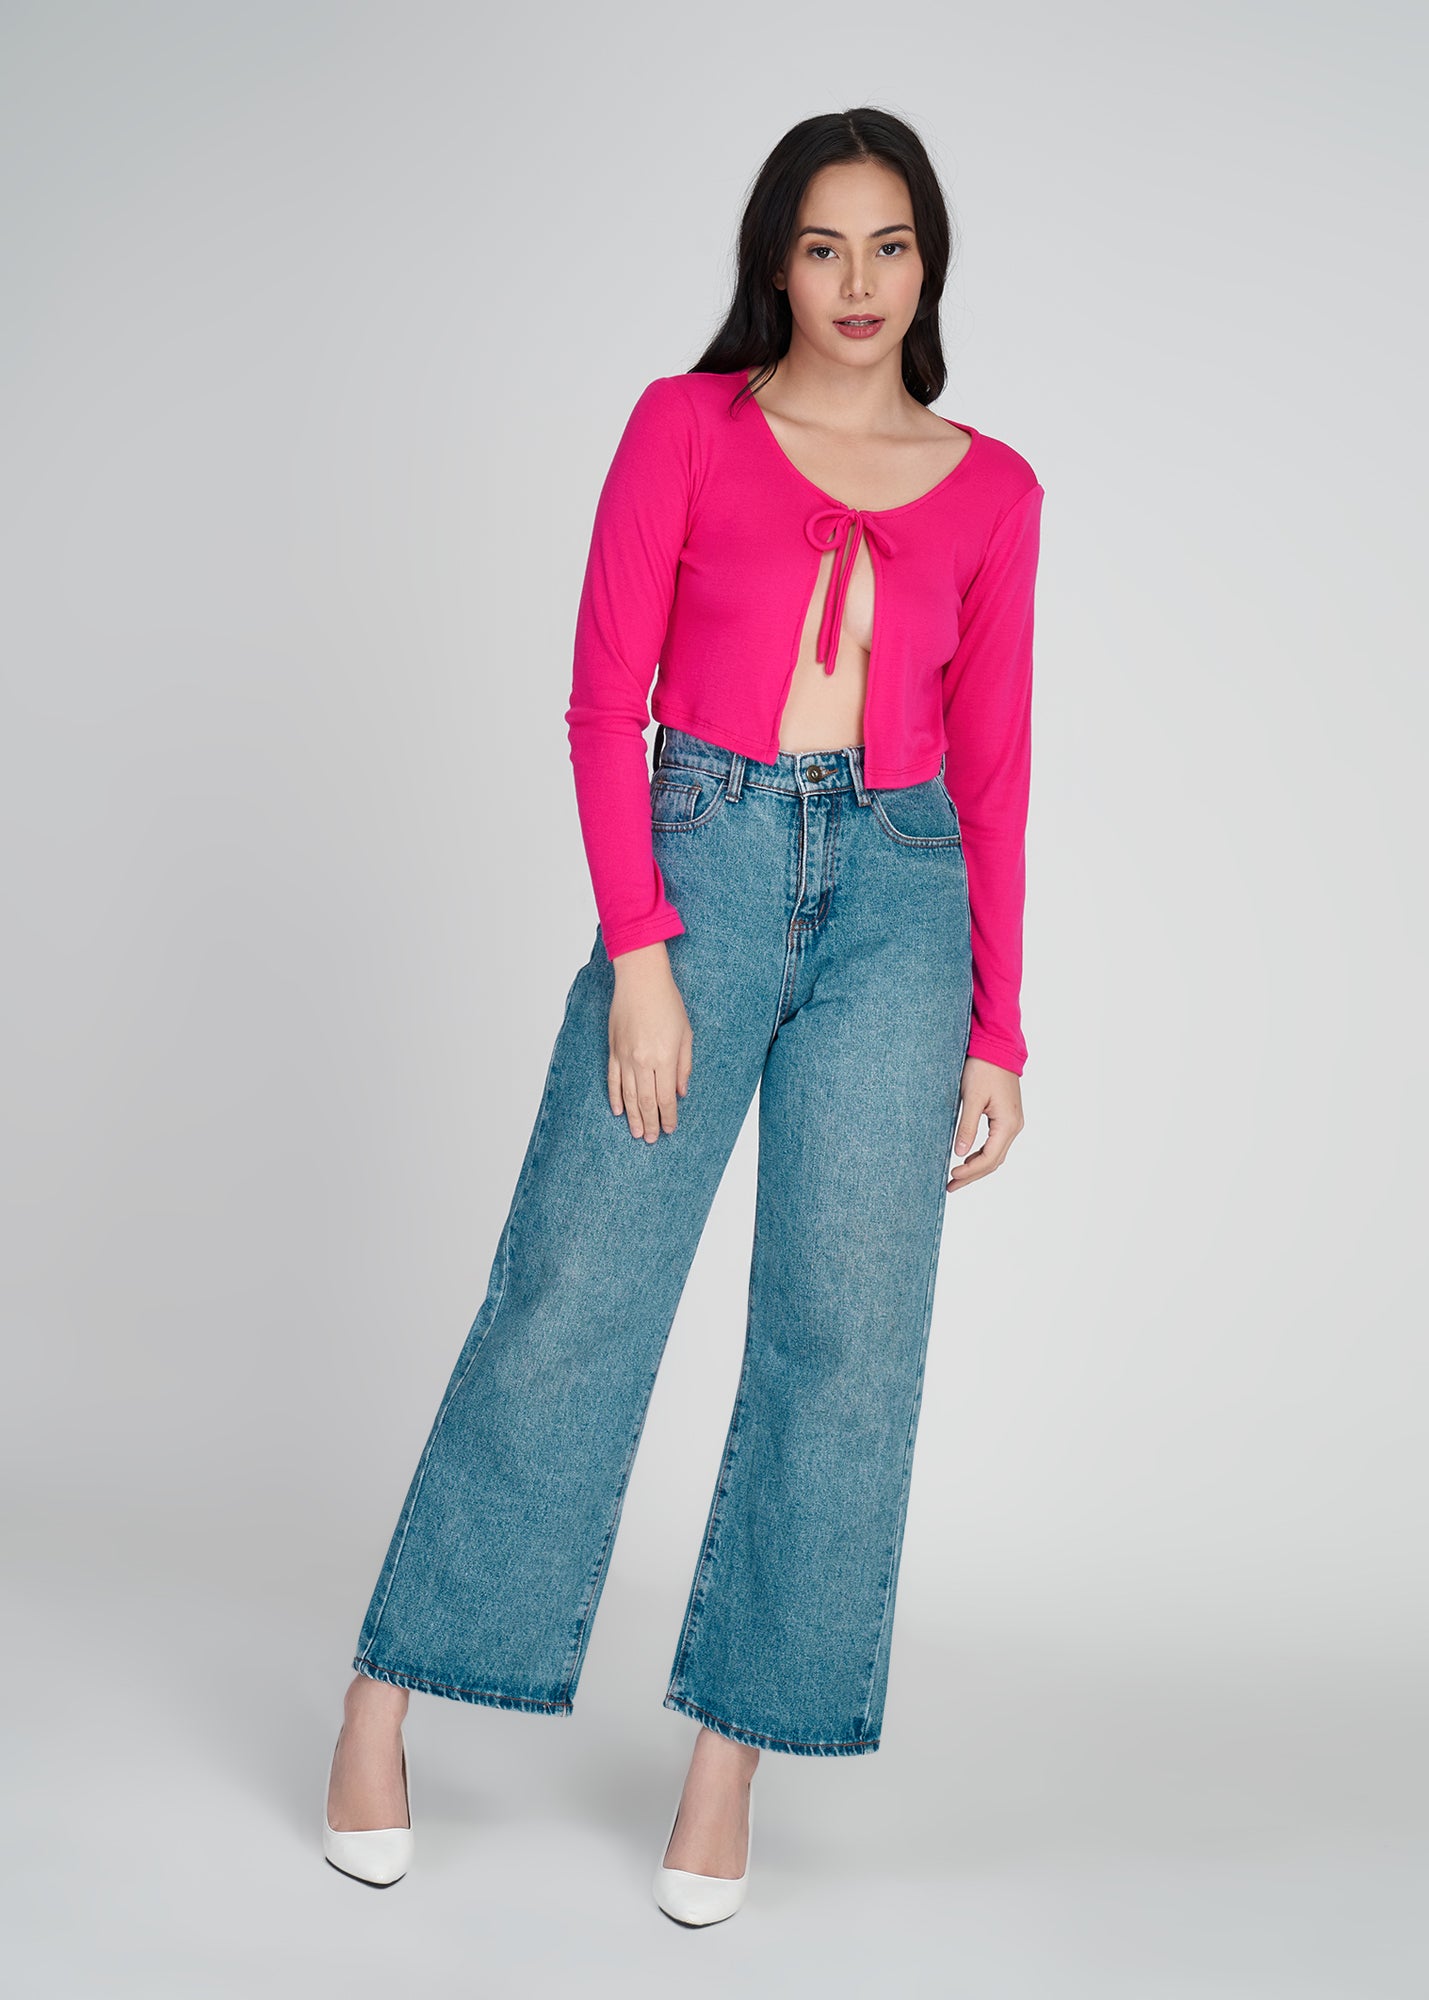 Basic Crop Cardigan (Hot Pink)